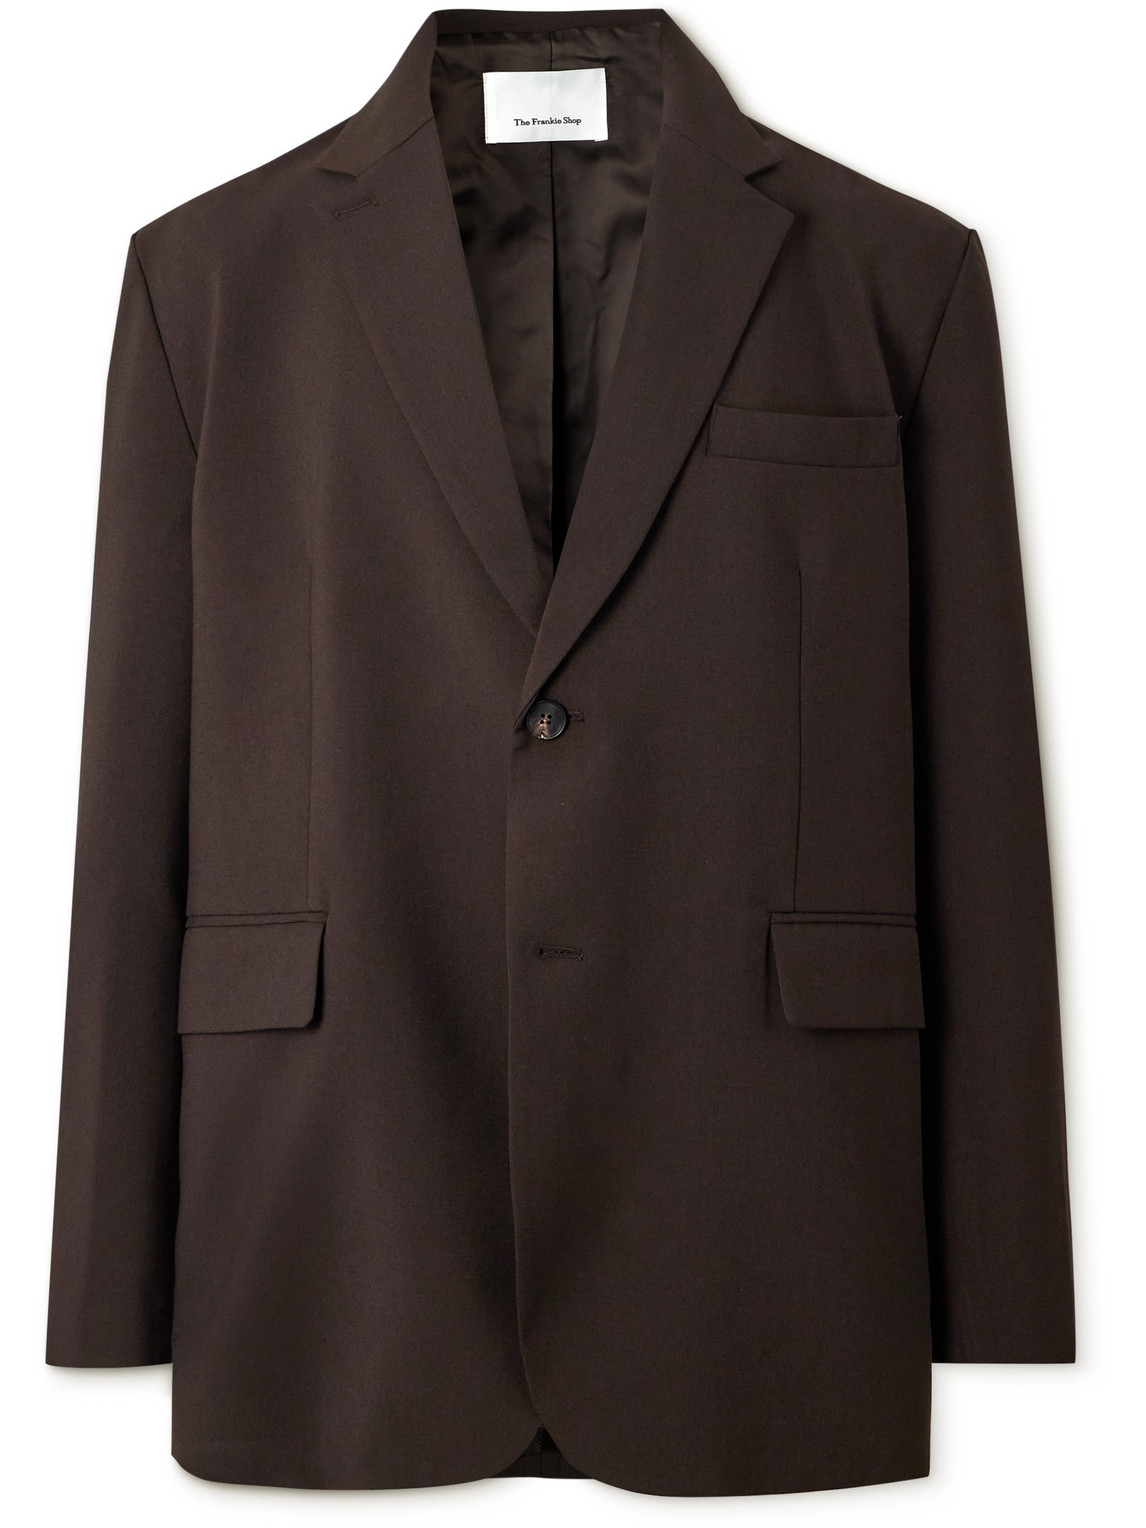 The Frankie Shop - Beo Oversized Woven Suit Jacket - Men - Brown - L von The Frankie Shop